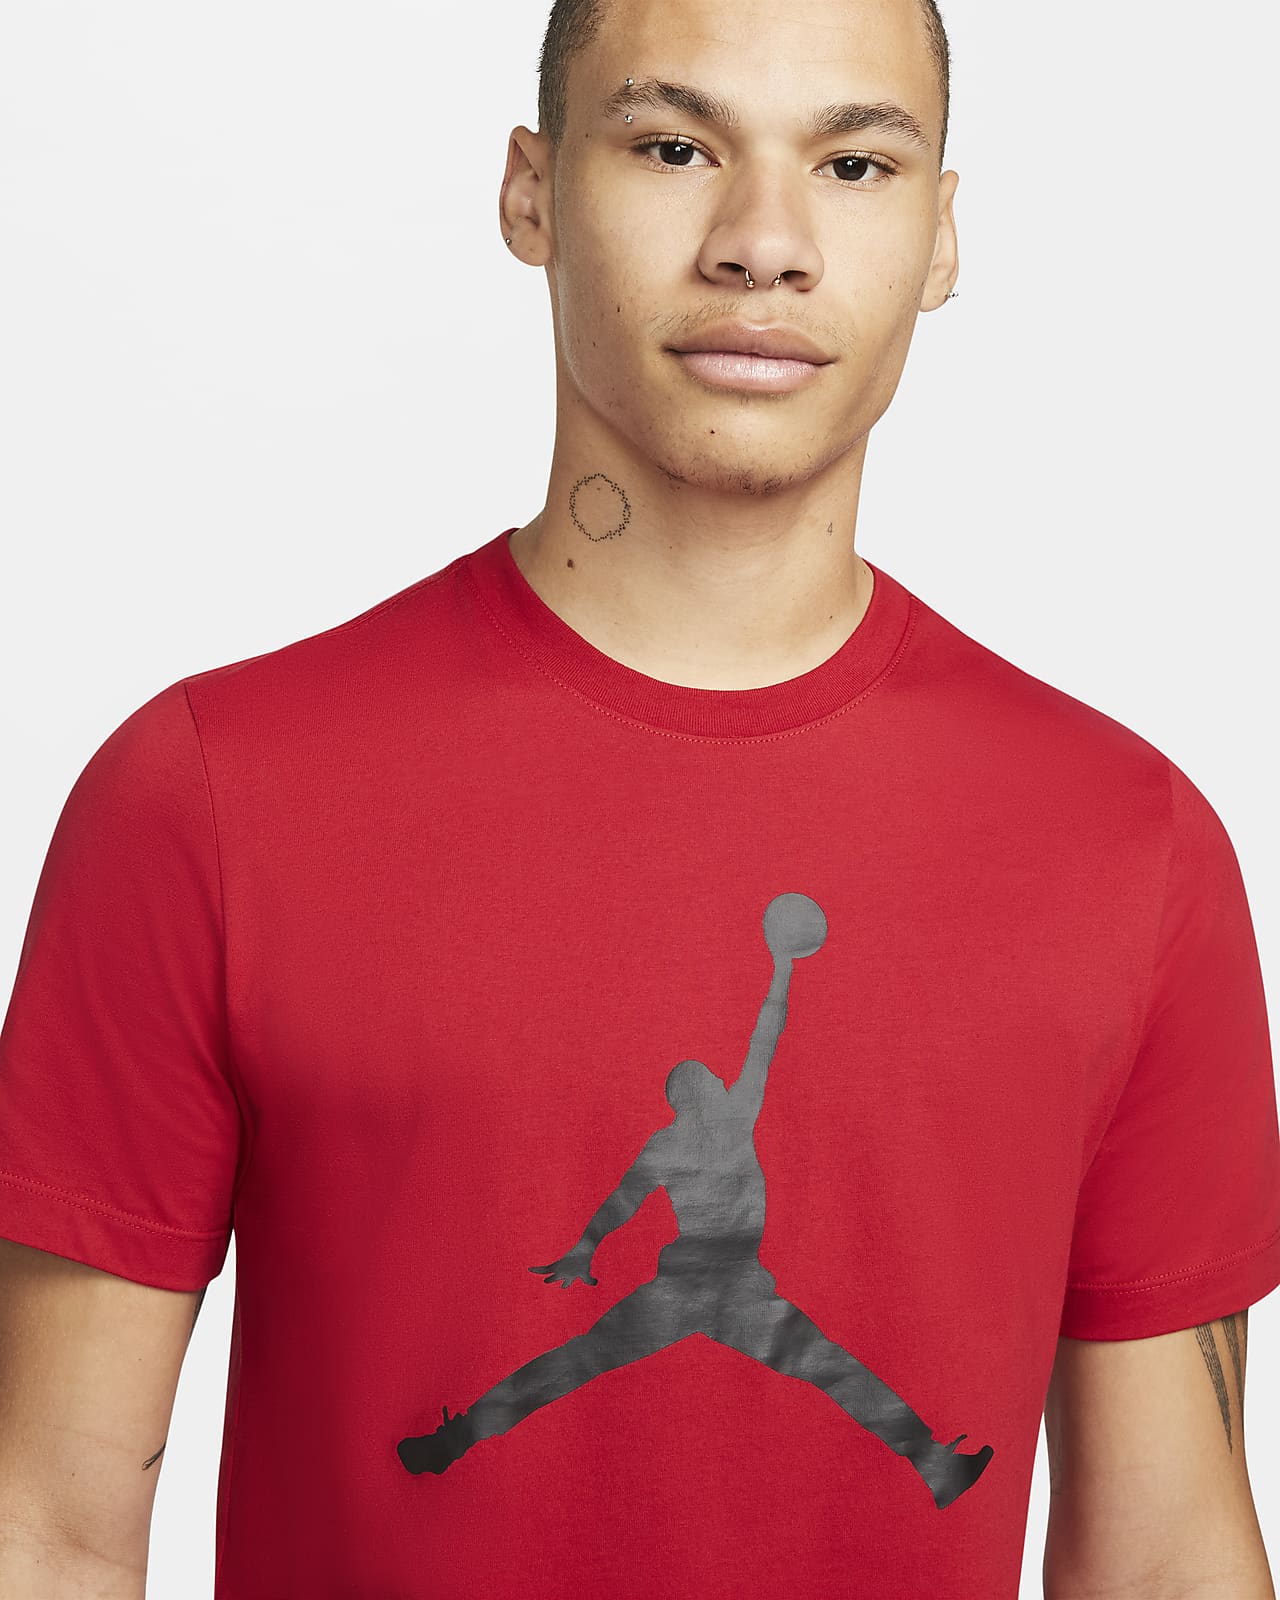 Nike公式 ジョーダン ジャンプマン メンズ Tシャツ オンラインストア 通販サイト